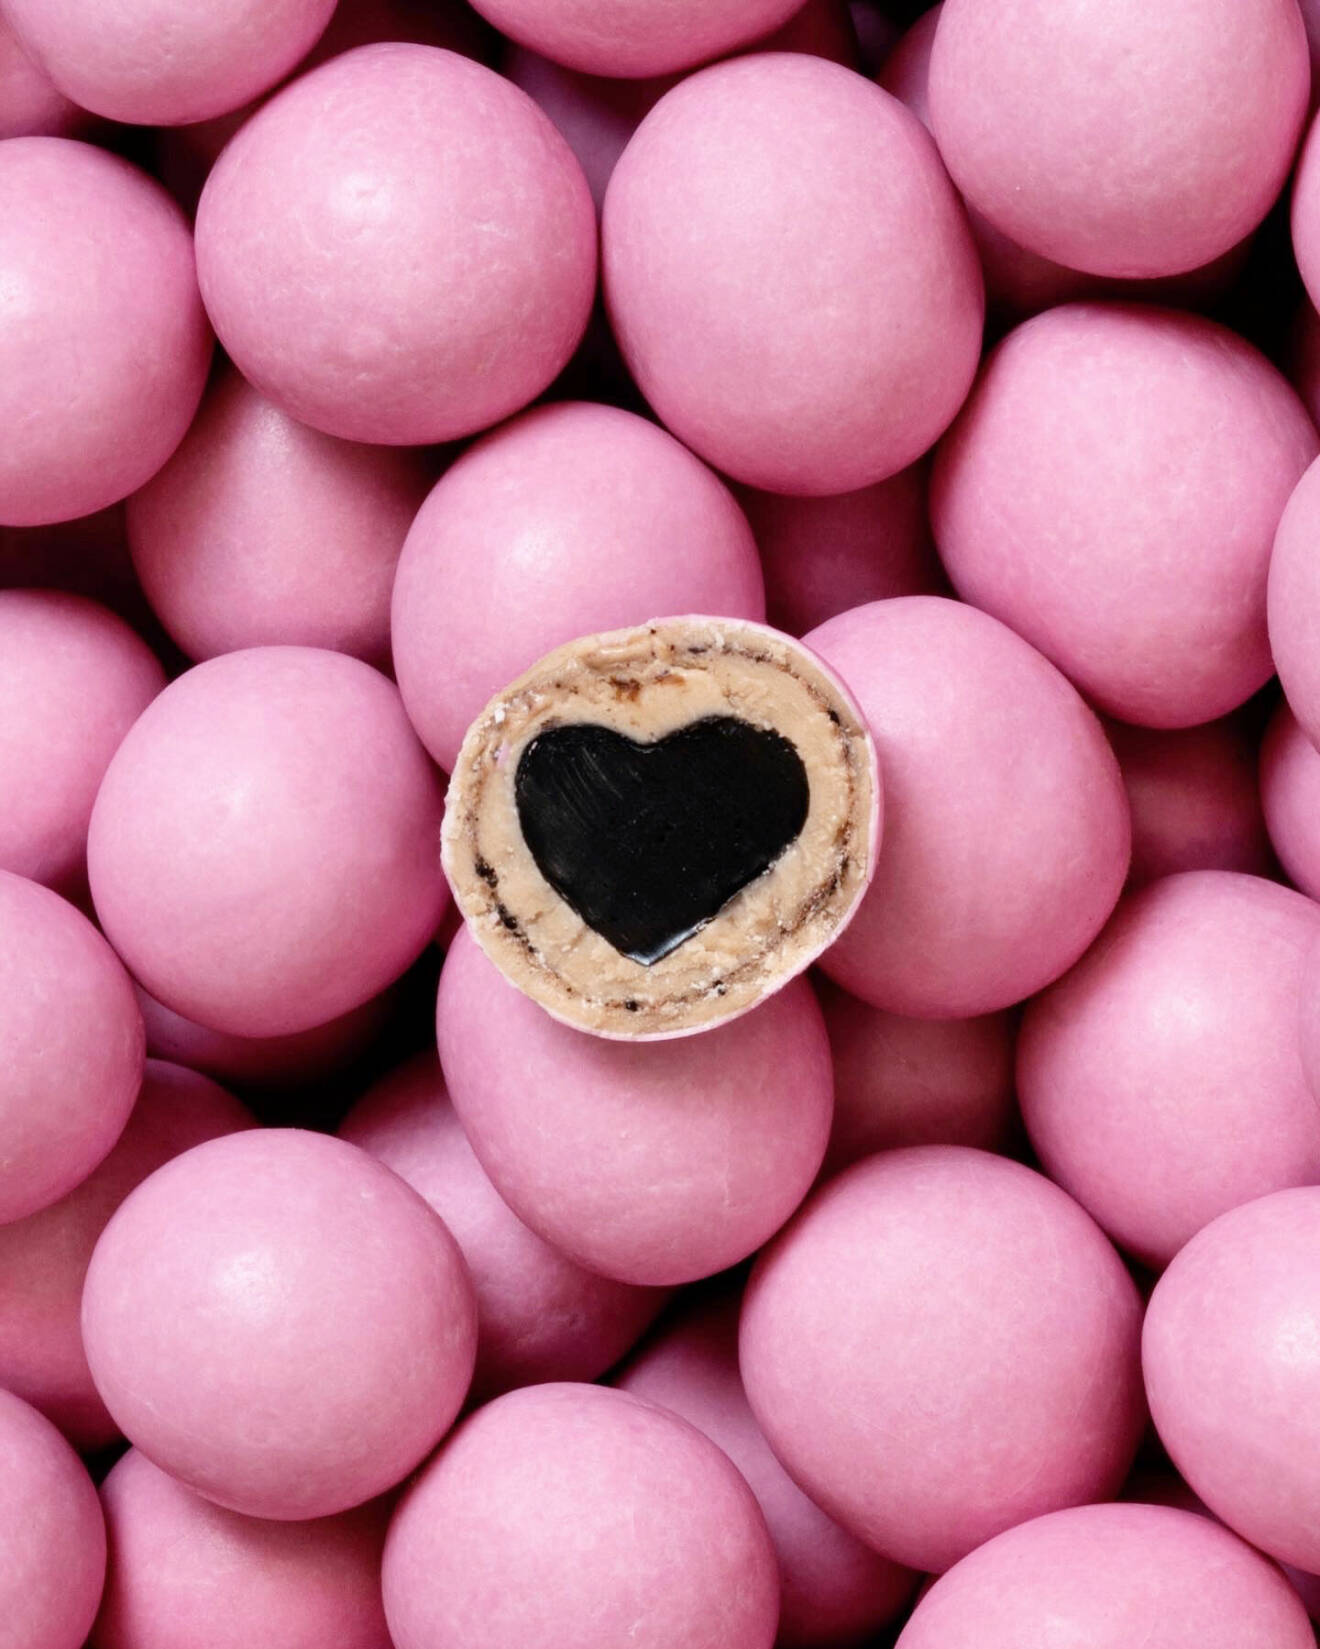 I varje chokladdragerad liten godbit gömmer sig en lakritskärna i form av ett hjärta